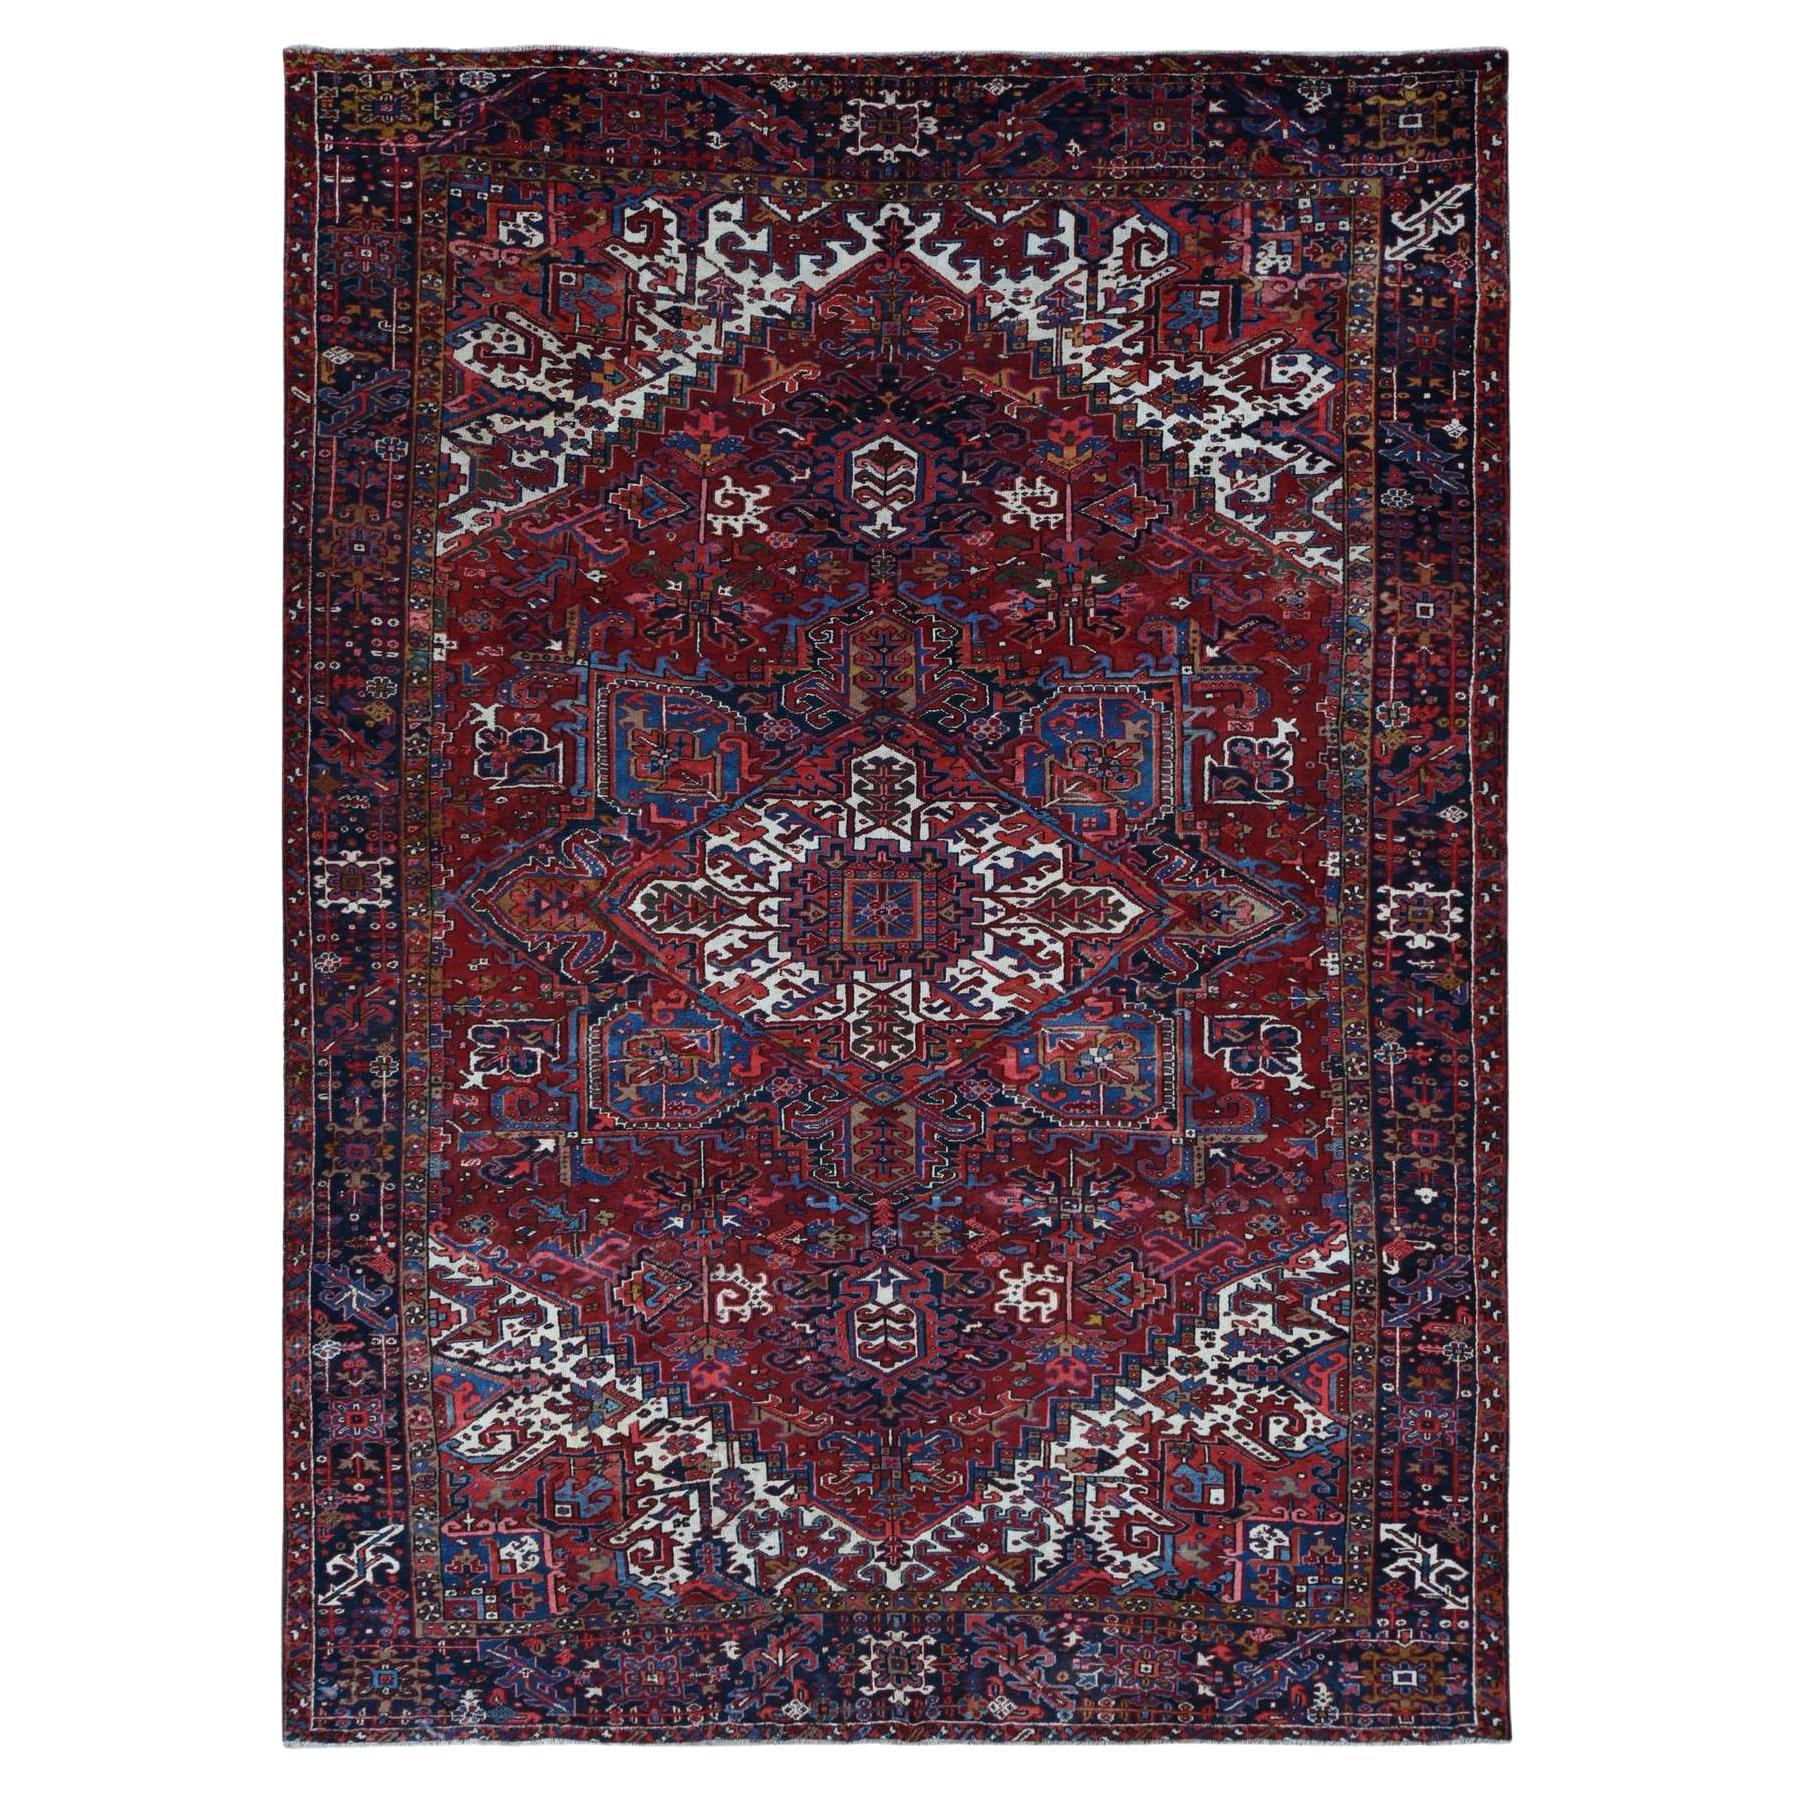 Roter, halb antiker, persischer Heriz-Teppich aus reiner Wolle mit vollem Flor und sauberer Handgeknüpft